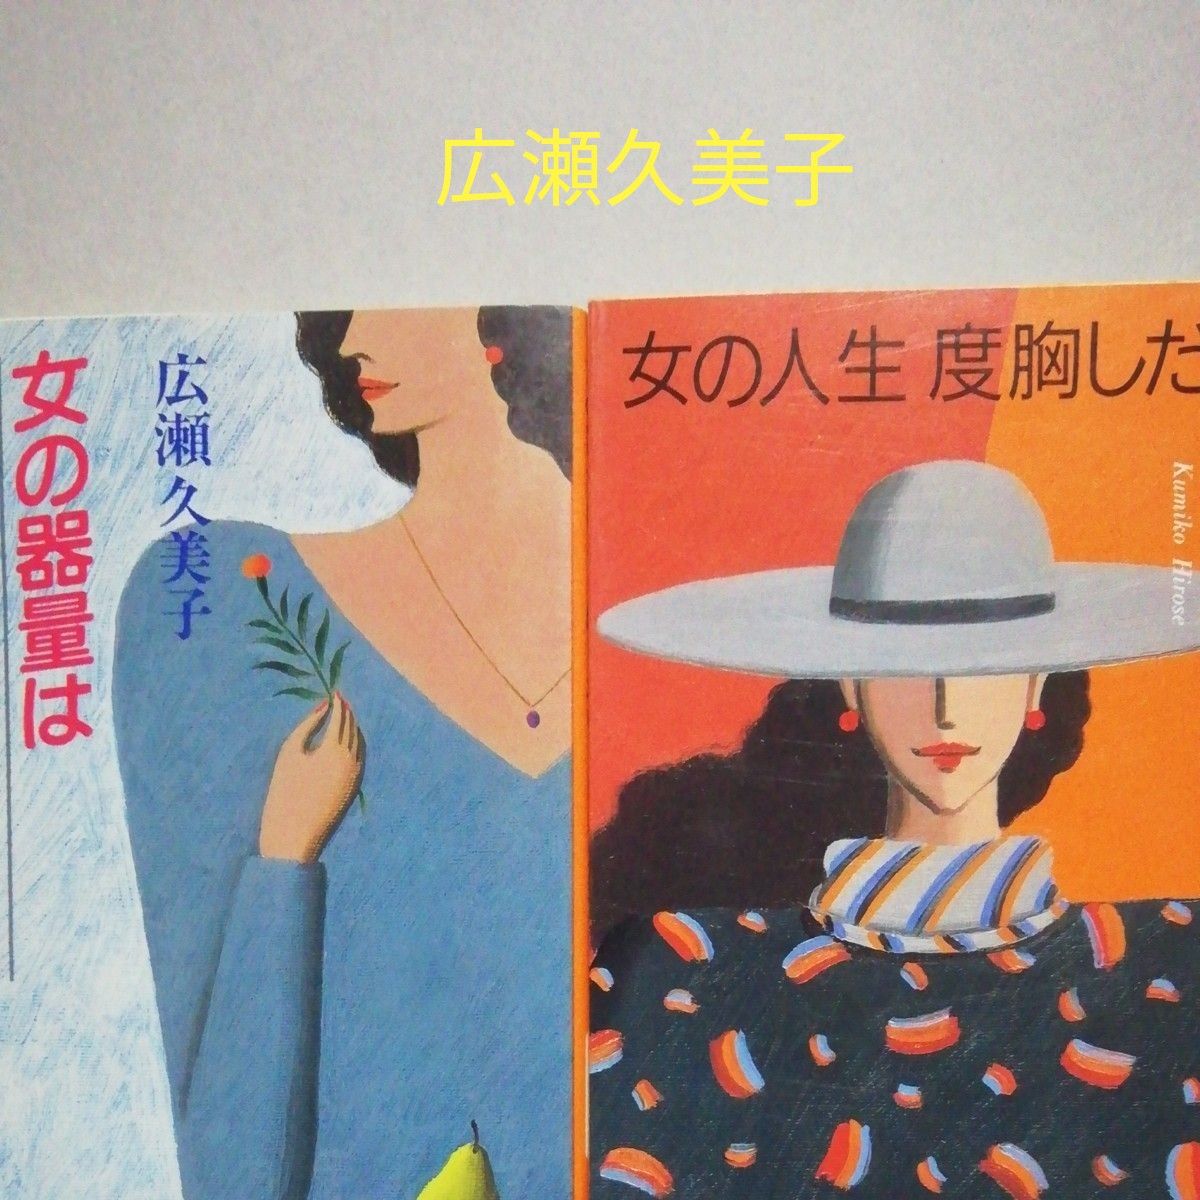 新潮文庫　広瀬久美子「女の人生度胸しだい」「女の器量はことばしだい」2冊セット